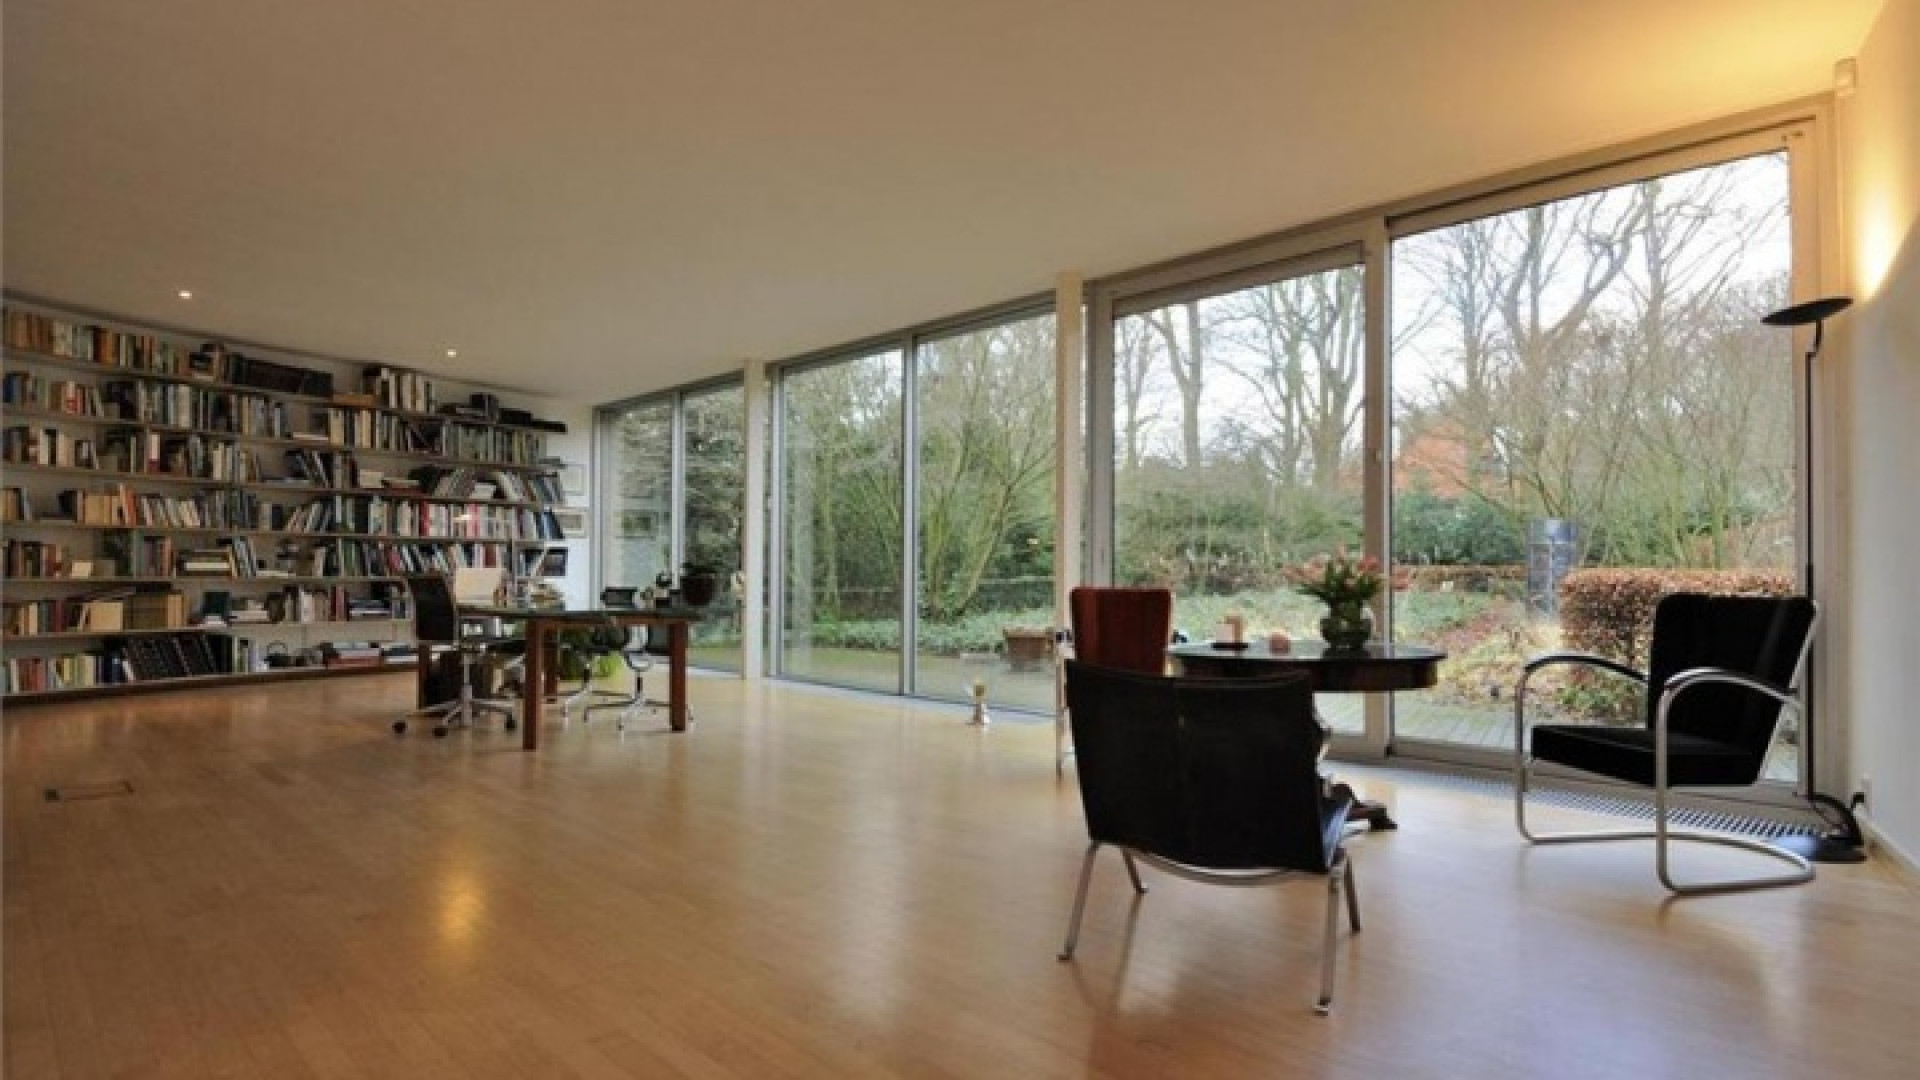 Totale prijsverlaging van half miljoen euro moet koper lokken voor villa Neelie Smit Kroes. Zie foto's! 17